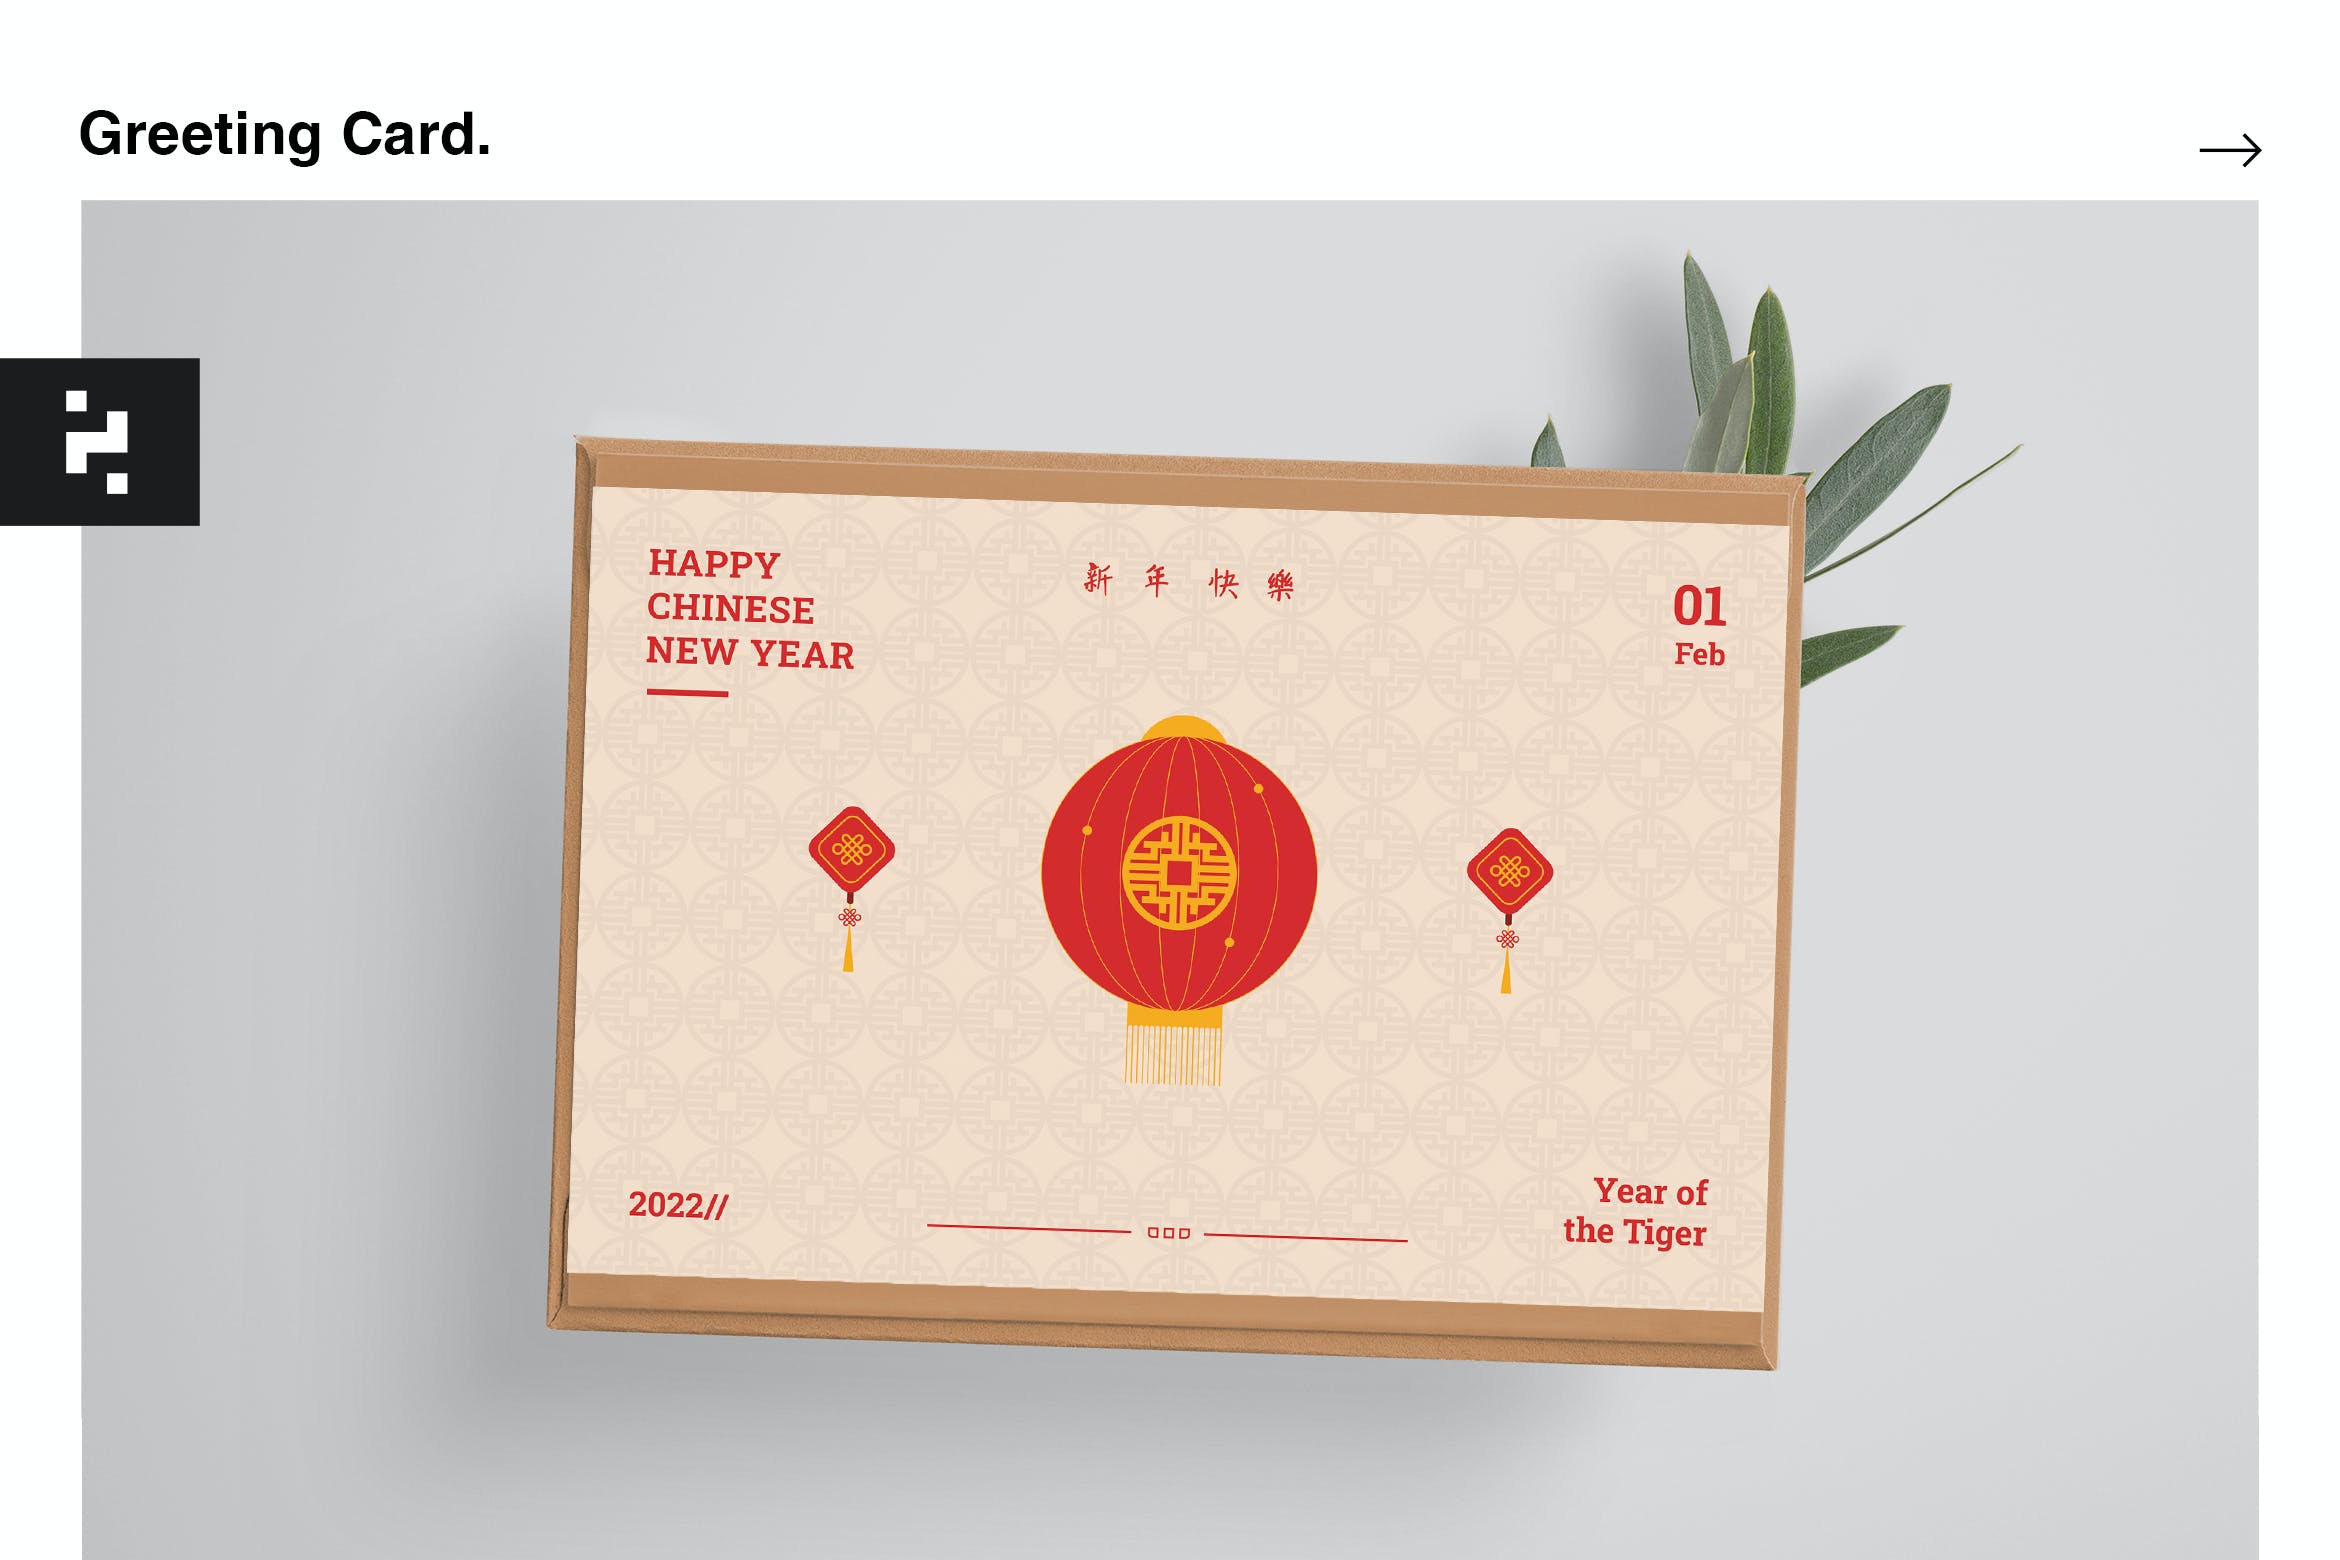 农历新年贺卡设计模板 Chinese New Year Greeting Card 设计素材 第1张